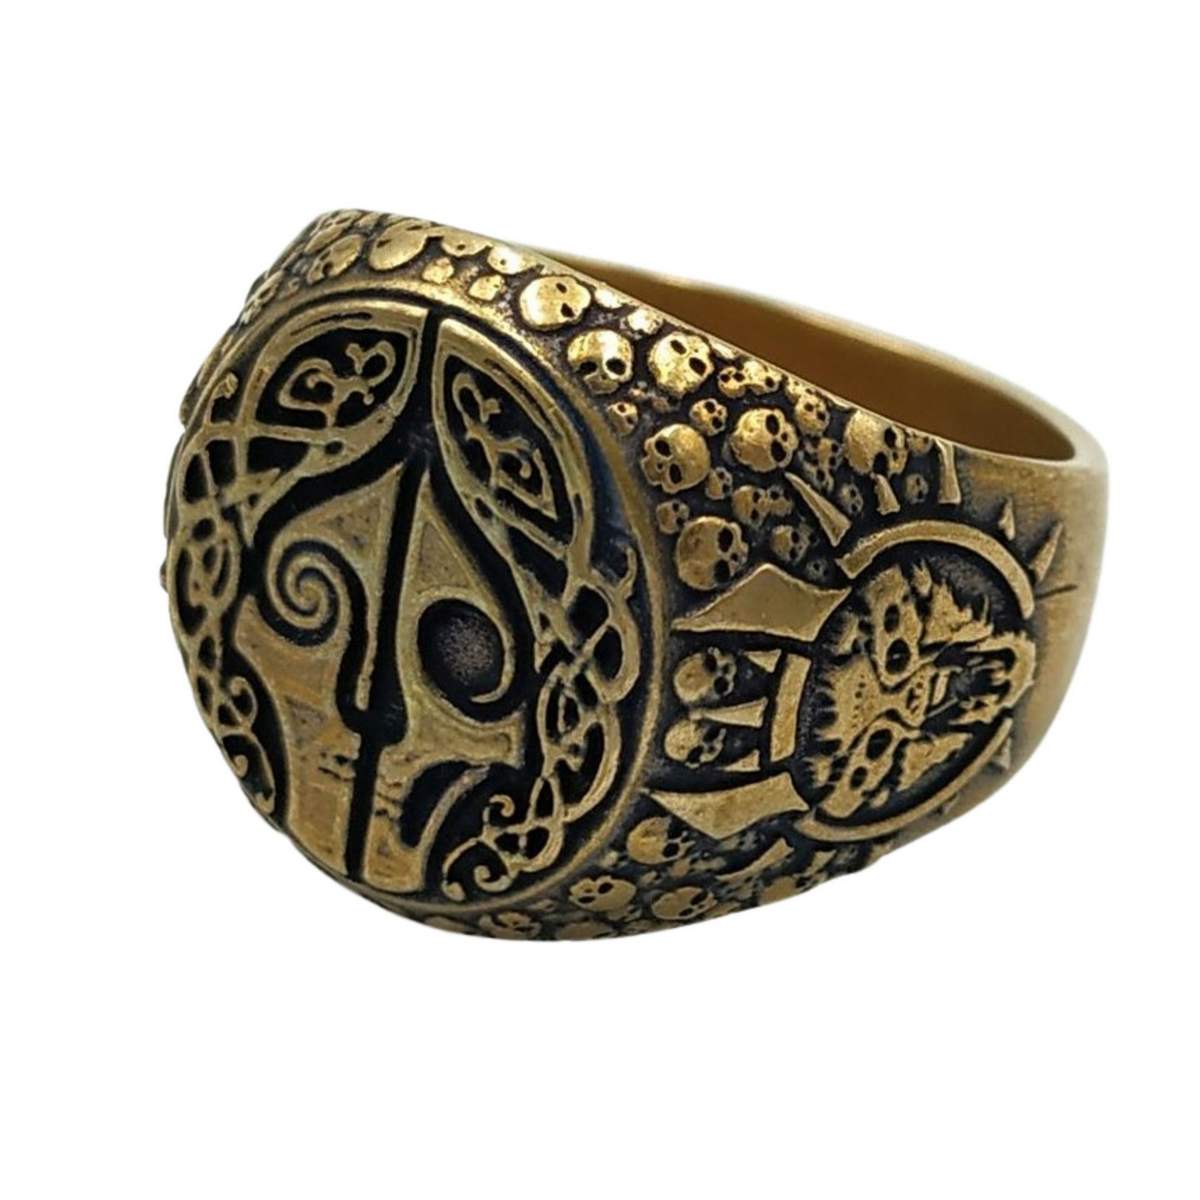 Hel goddess ring from bronze